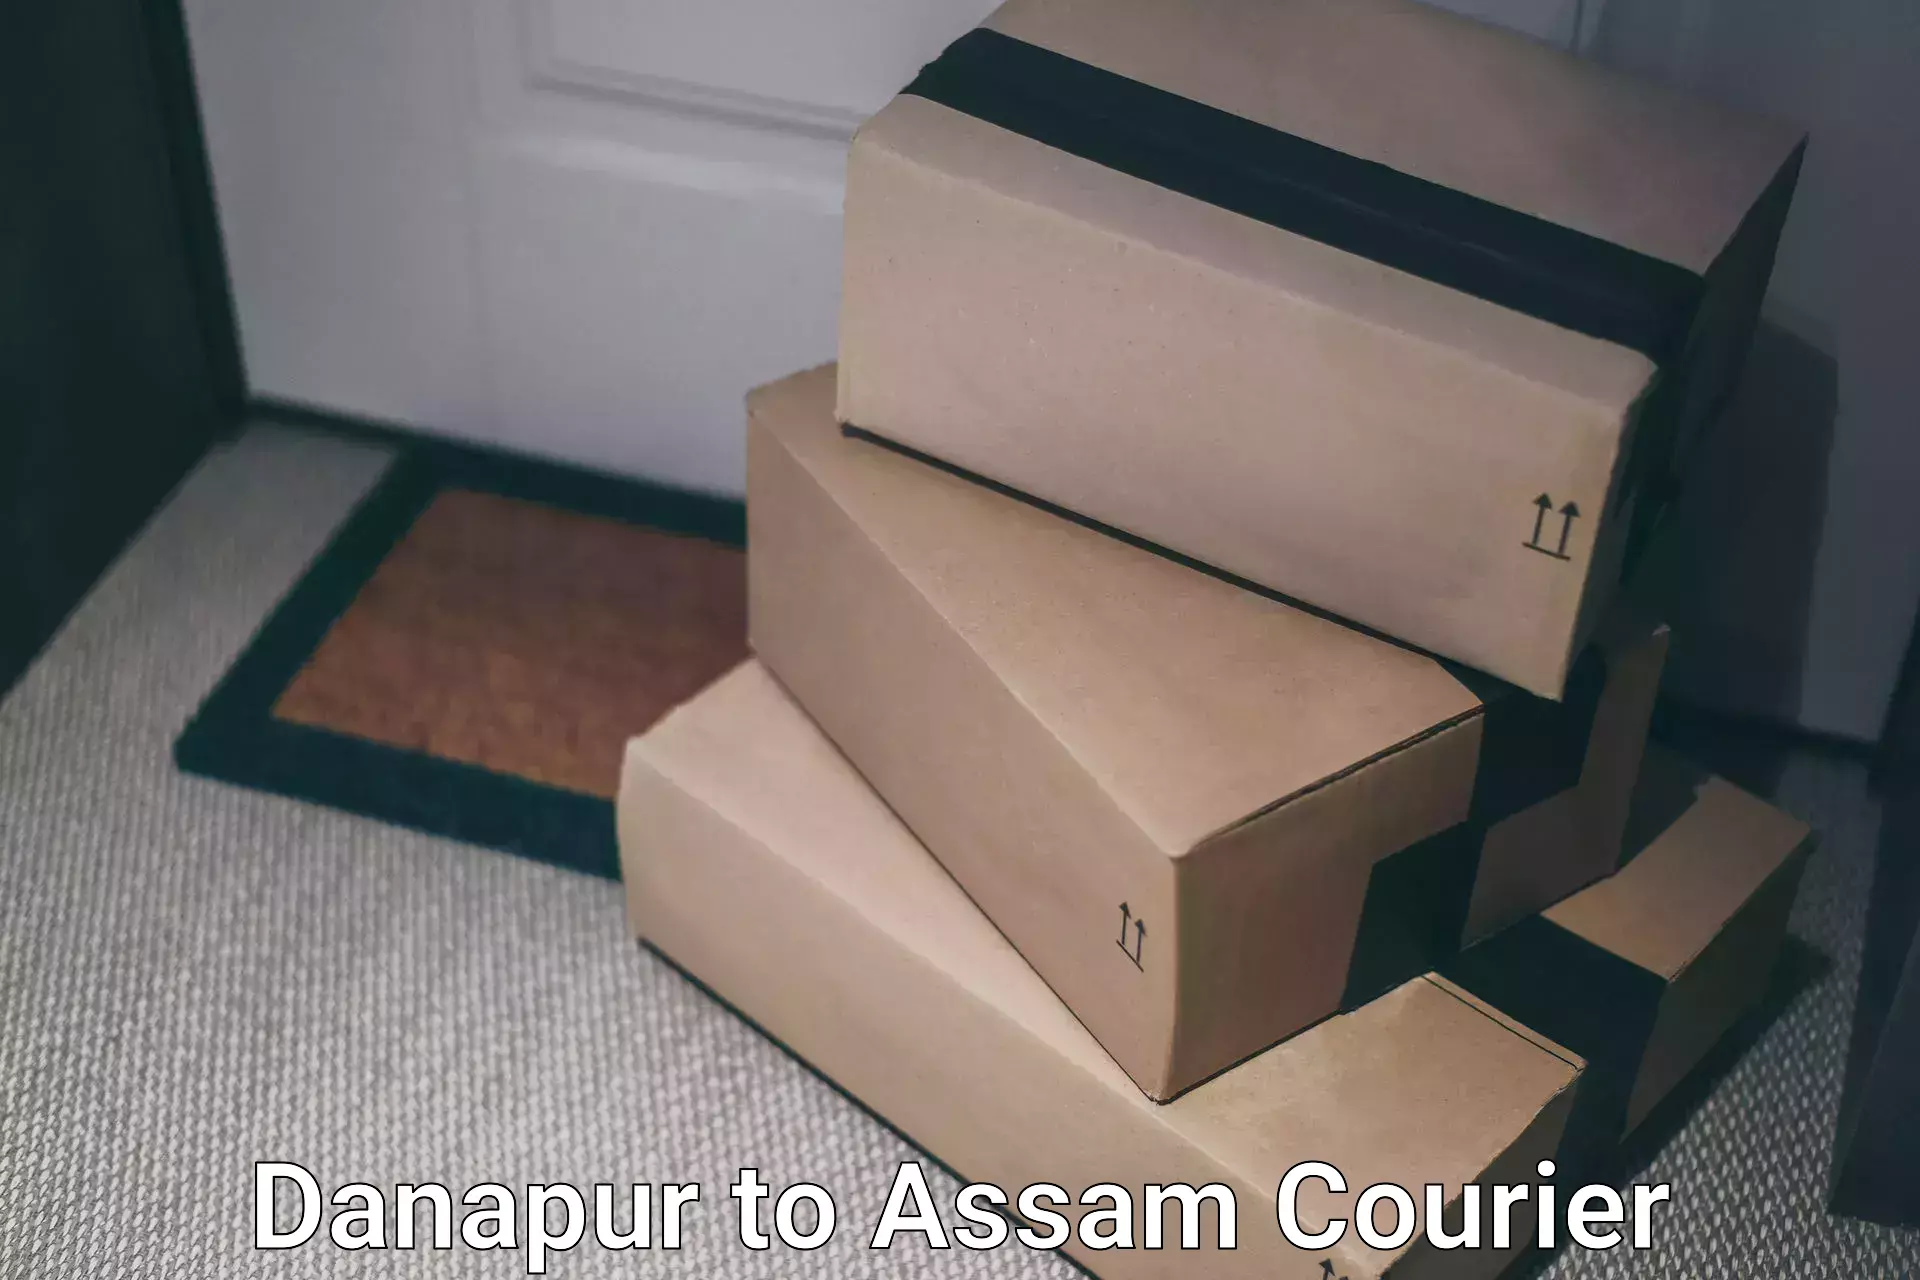 Next-generation courier services Danapur to Assam